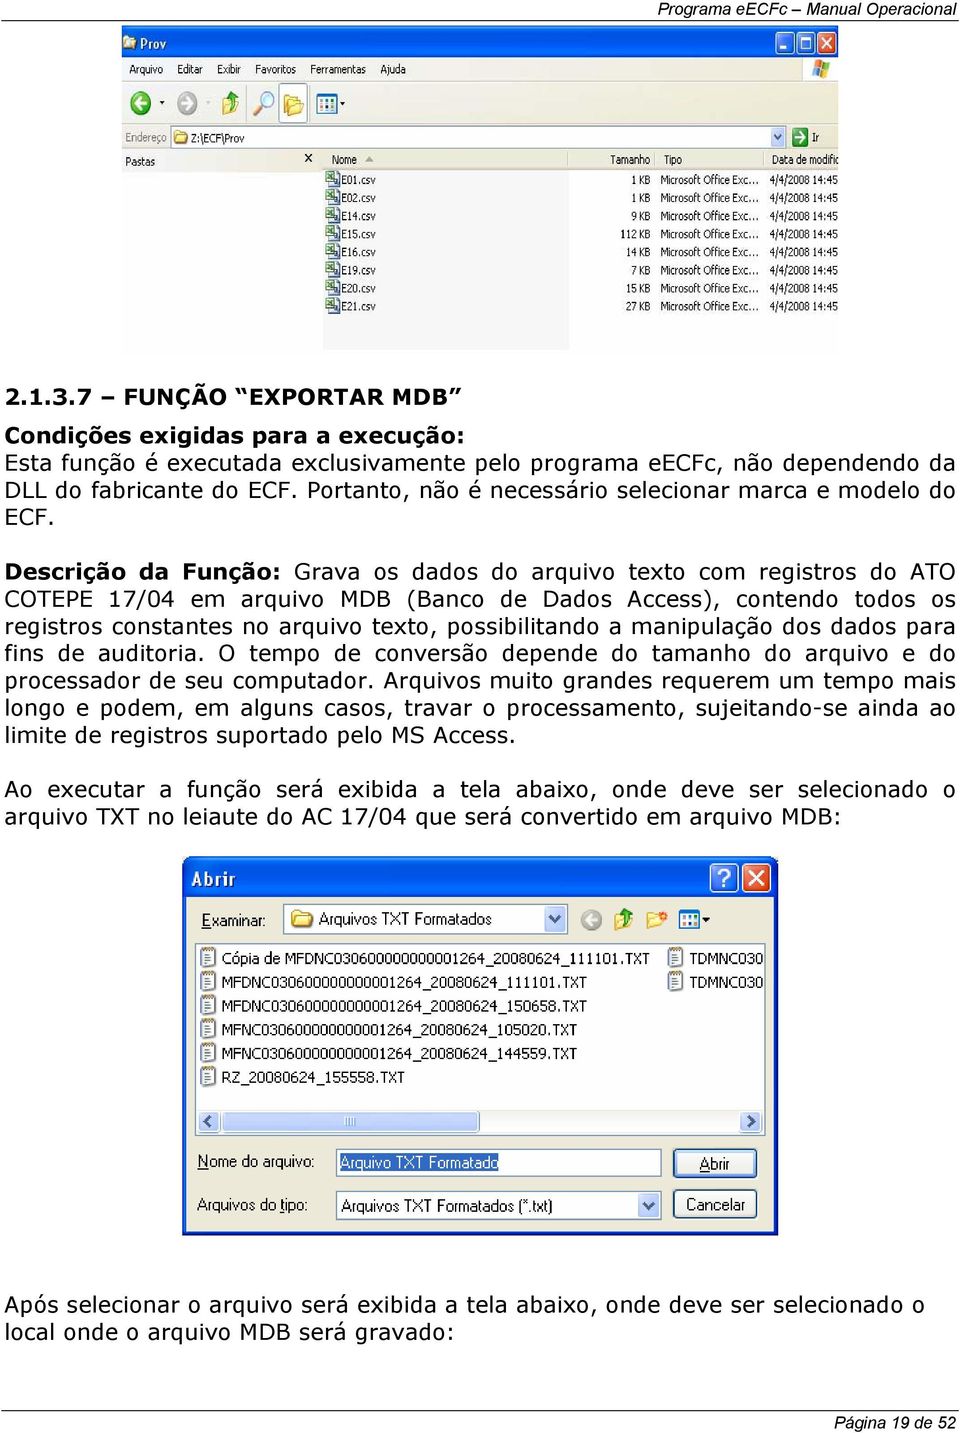 Descrição da Função: Grava os dados do arquivo texto com registros do ATO COTEPE 17/04 em arquivo MDB (Banco de Dados Access), contendo todos os registros constantes no arquivo texto, possibilitando